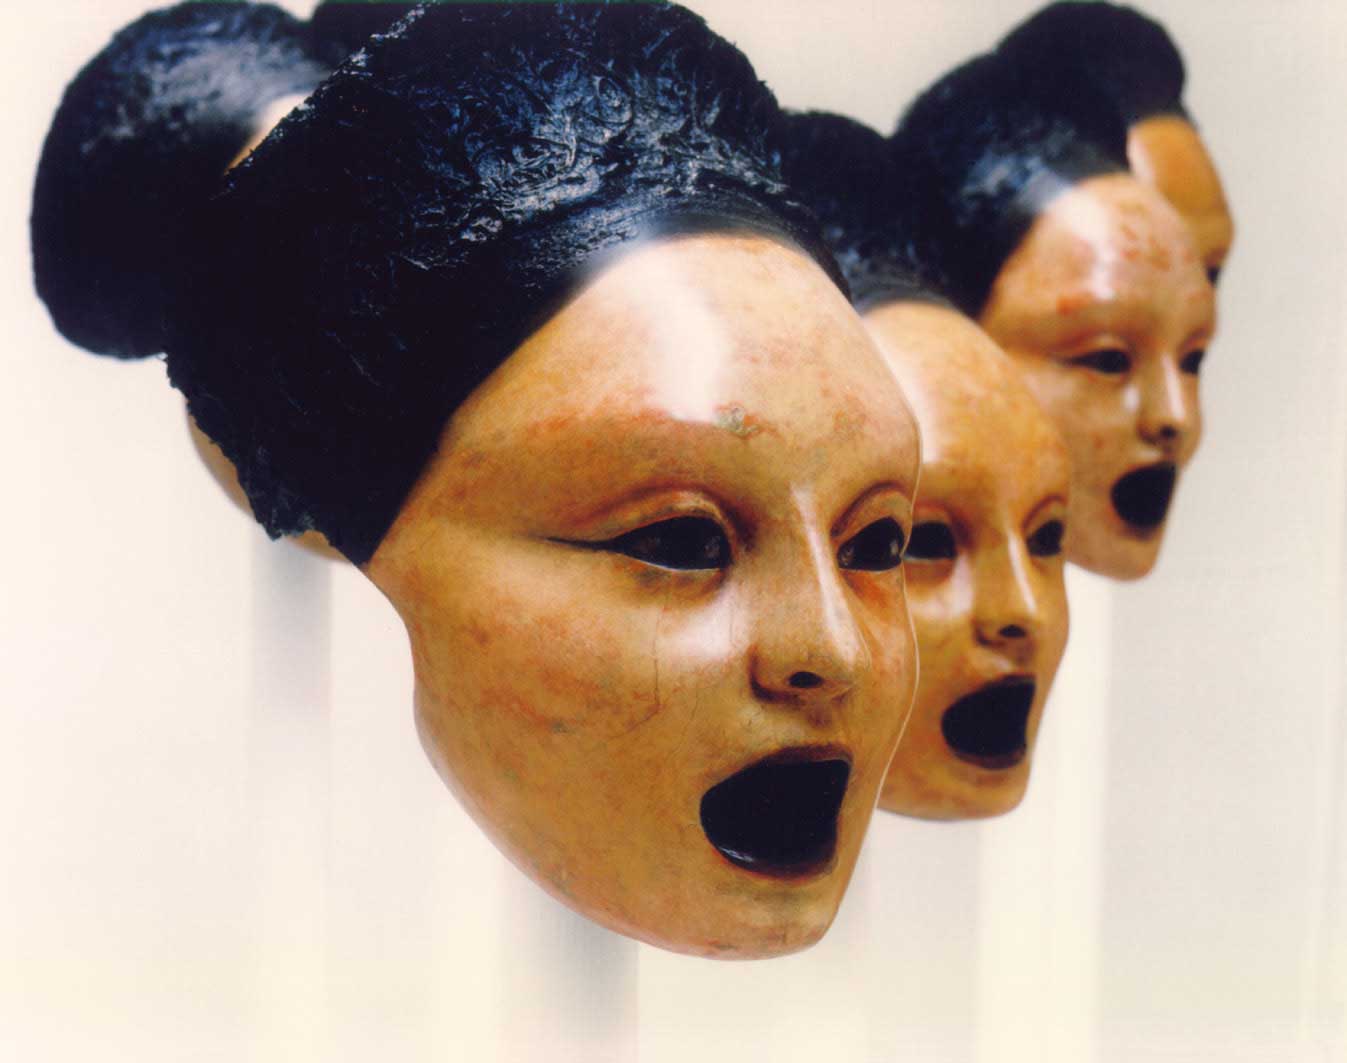 greek theatre masks templates